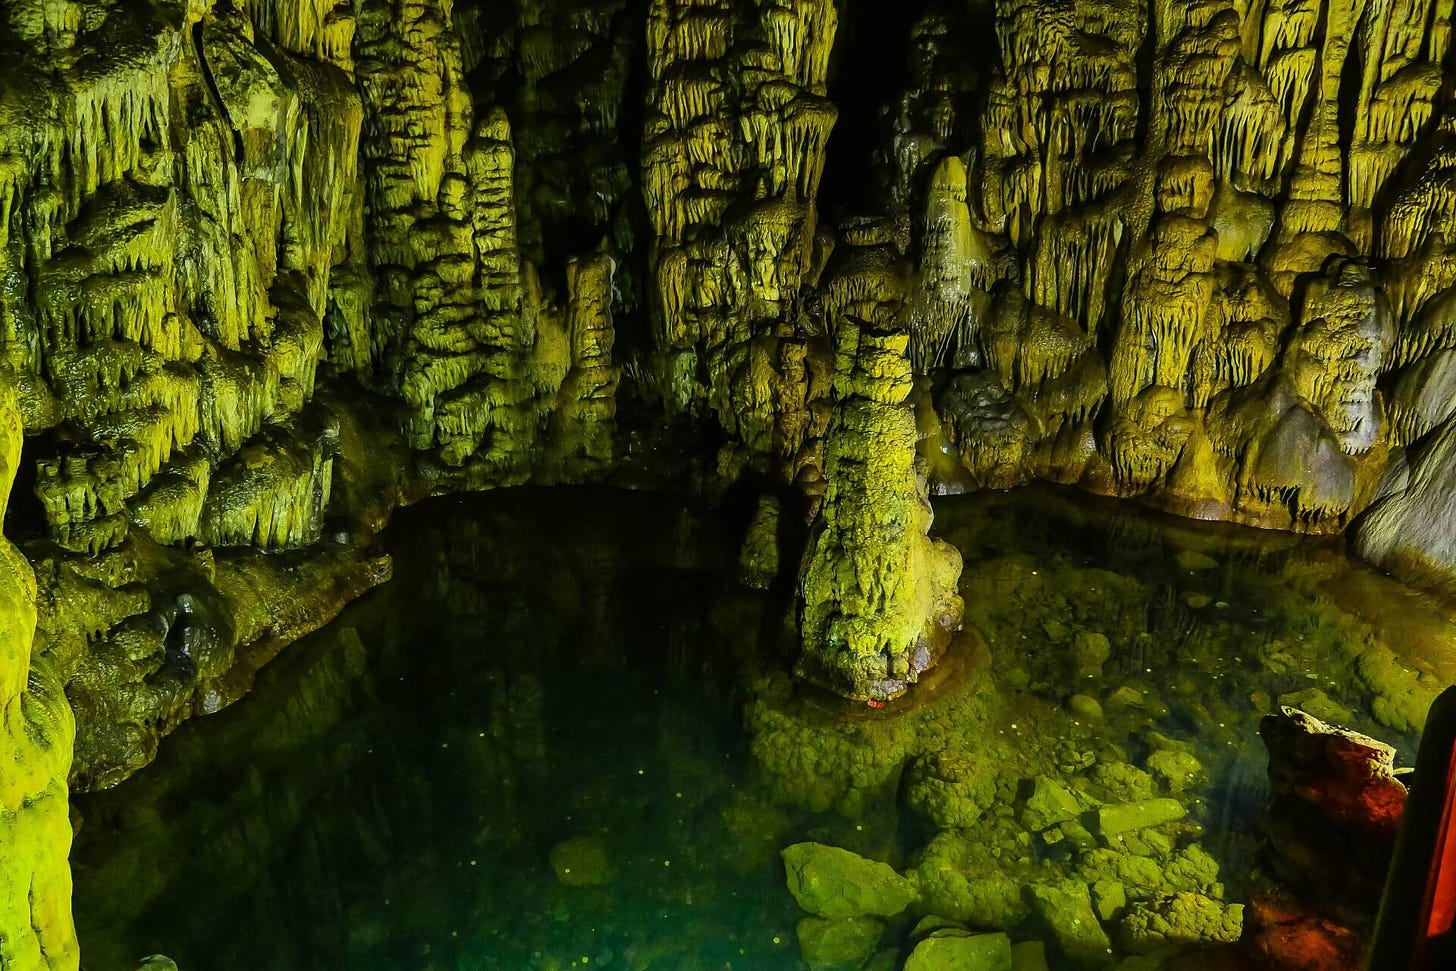 Foto do interior de uma caverna, mostrando várias estalactites e estalagmites, formações rochosas que se acumulam, como se derretessem lentamente, em tons esverdeados.